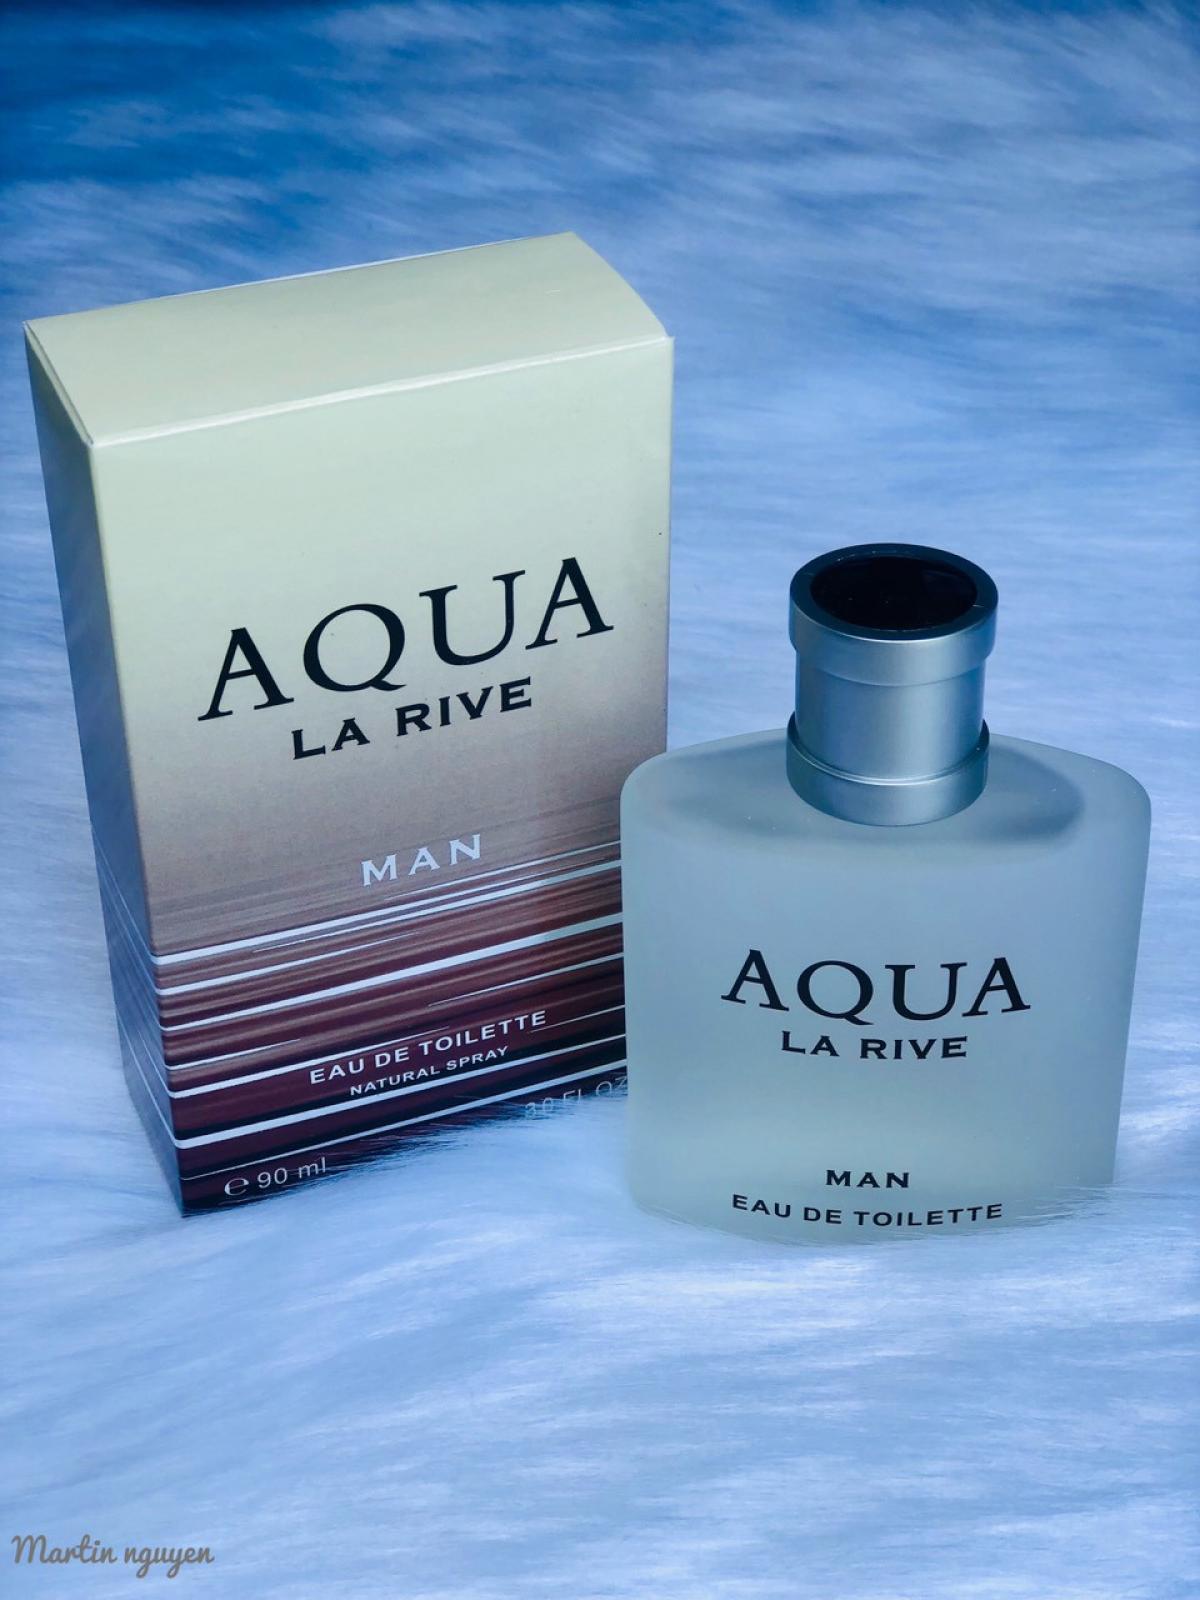 Риве аква. Aqua la Rive. Духи Аква де ла Риве. Мужская вода Aqua la Rive,запах ее?. Хороший ли запах мужской воды Aqua la Rive.